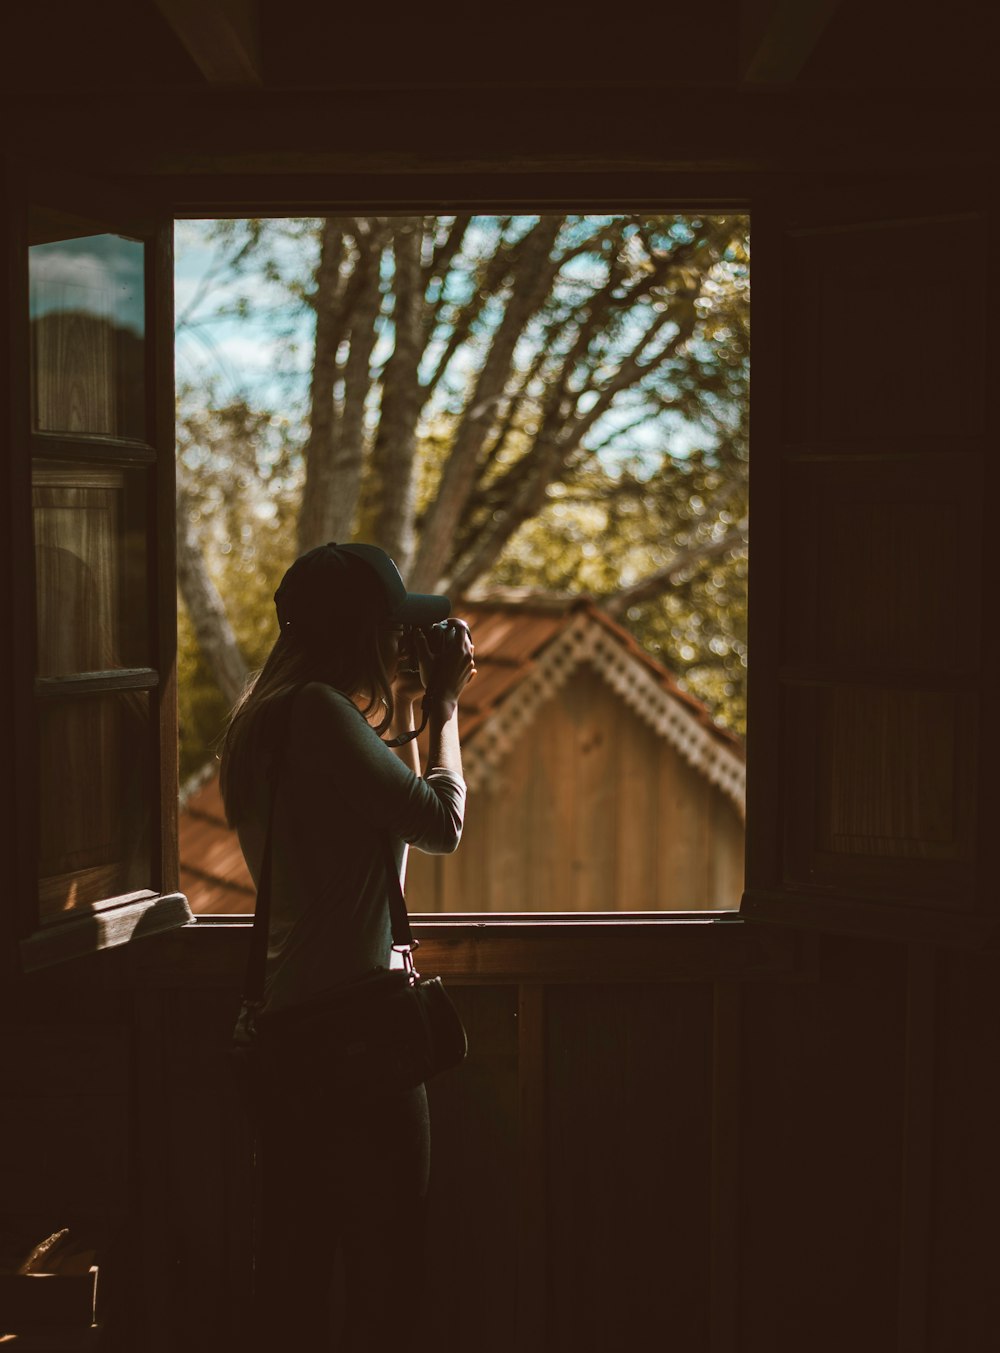 woman taking photo outside window